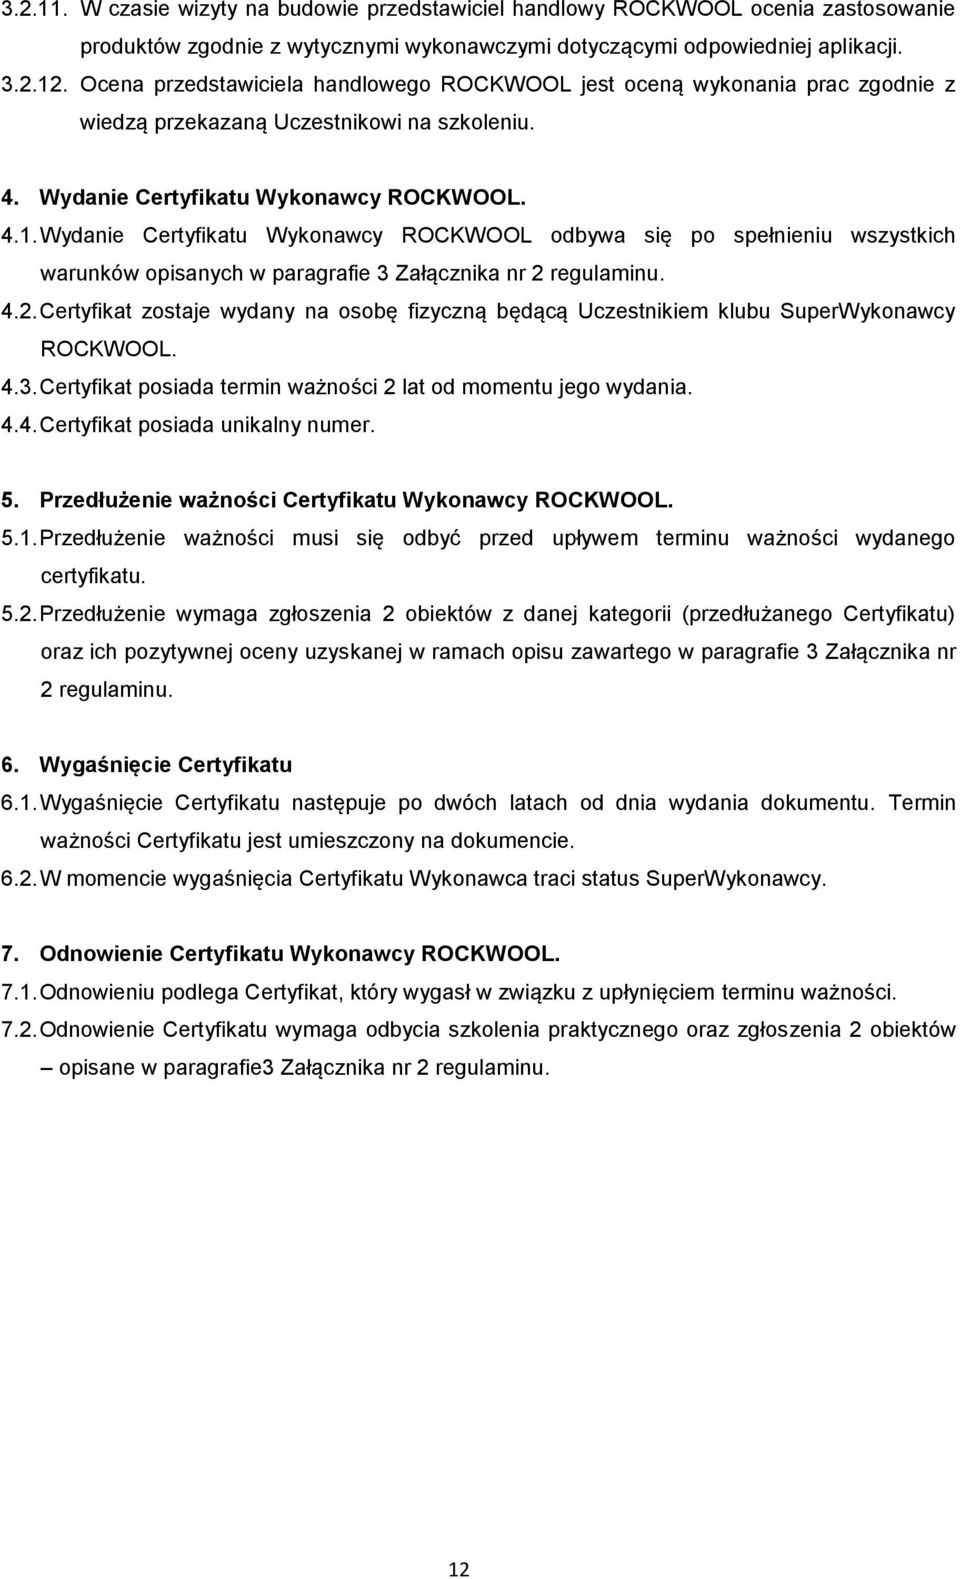 Wydanie Certyfikatu Wykonawcy ROCKWOOL odbywa się po spełnieniu wszystkich warunków opisanych w paragrafie 3 Załącznika nr 2 